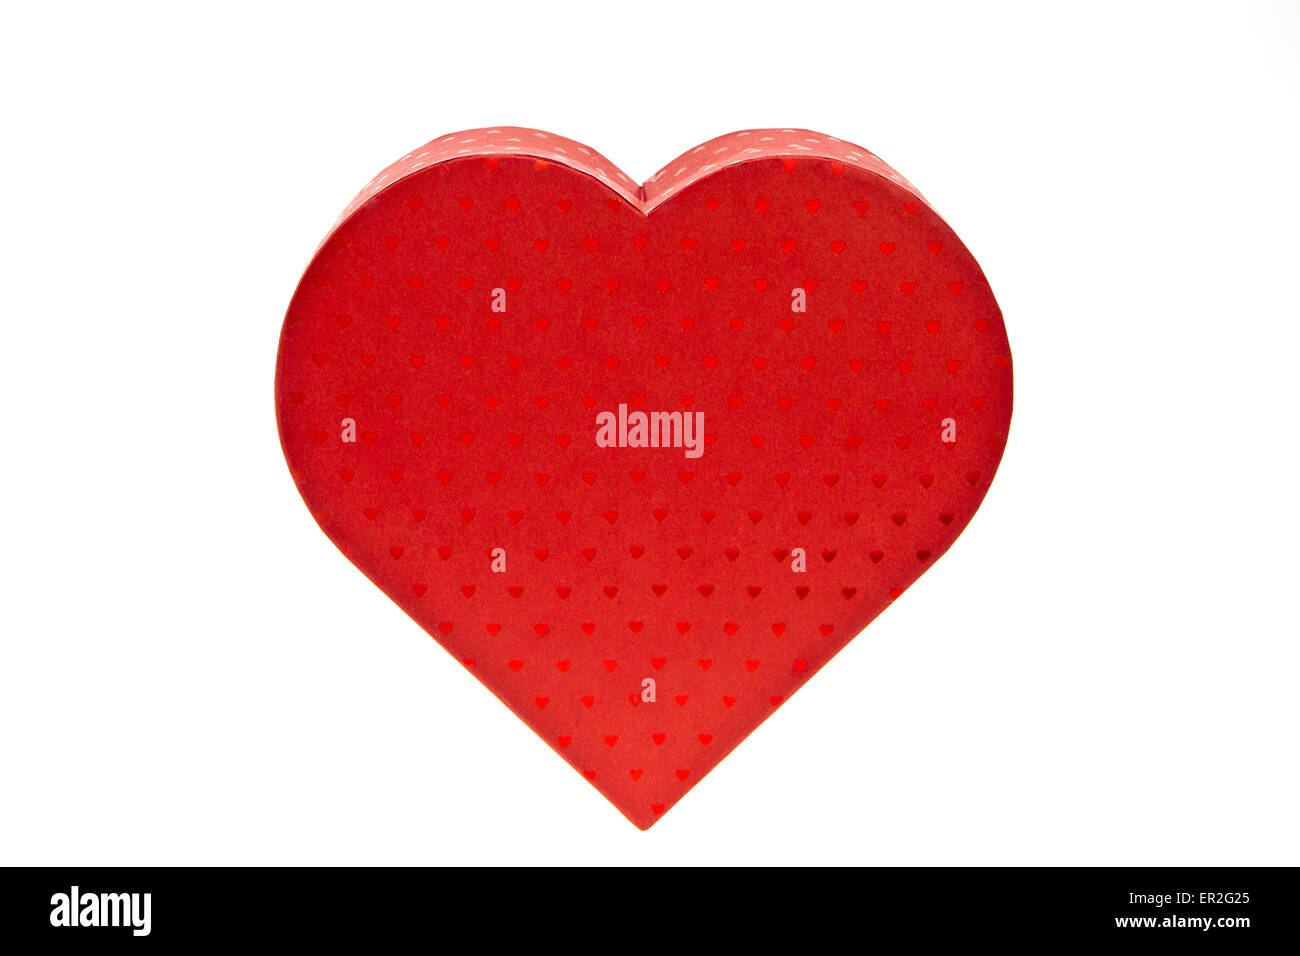 Rotes Geschenkpäckchen in Herzform, Valentinstag, Red heart-shaped gift package, Valentine s Day, anniversary, bow, box, celebra Stock Photo